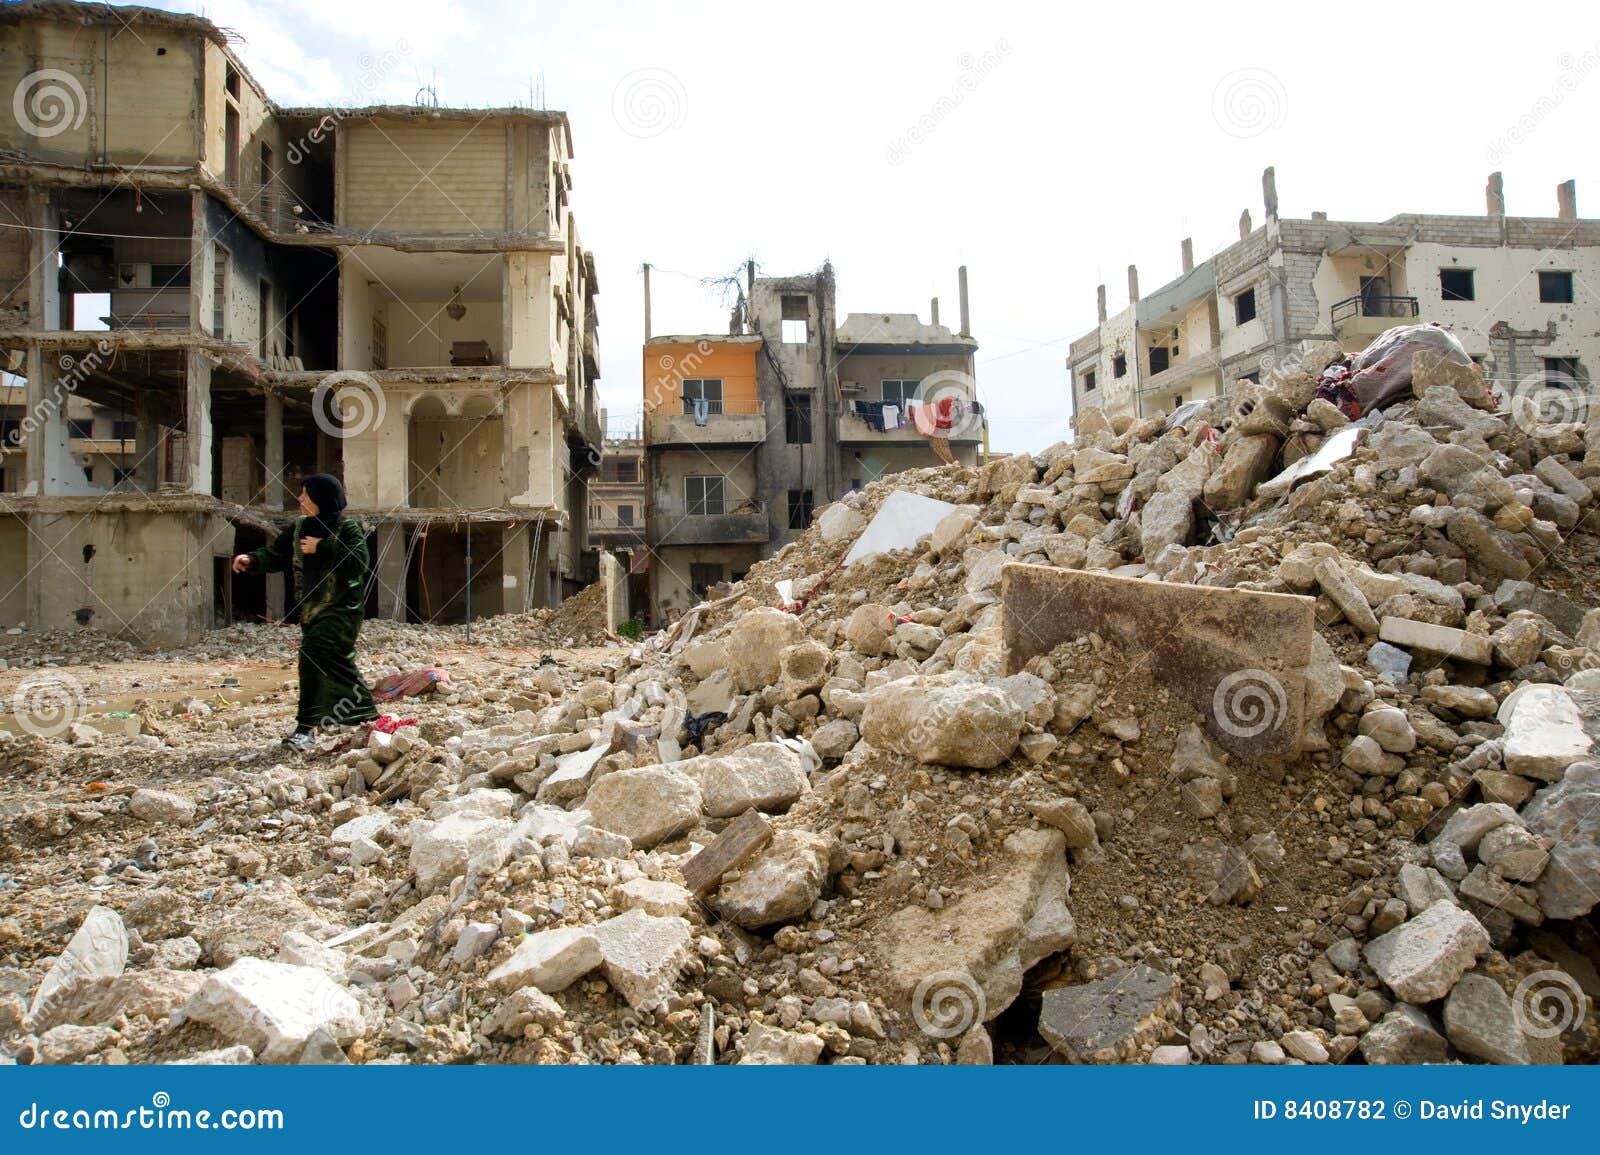 11. Februar 2009 - eine Straßenszene vom neuen Nahr Al entblößte Flüchtlingslager im Nordlibanon. Das alte Lager, Haus zu 30.000 palästinensischen Flüchtlingen, wurde vollständig 2007 durch das Kämpfen zwischen der libanesischen Armee und den Militaristen innerhalb des Lagers zerstört. Die Teile des neuen Lagers wurden auch schwer geschädigt.